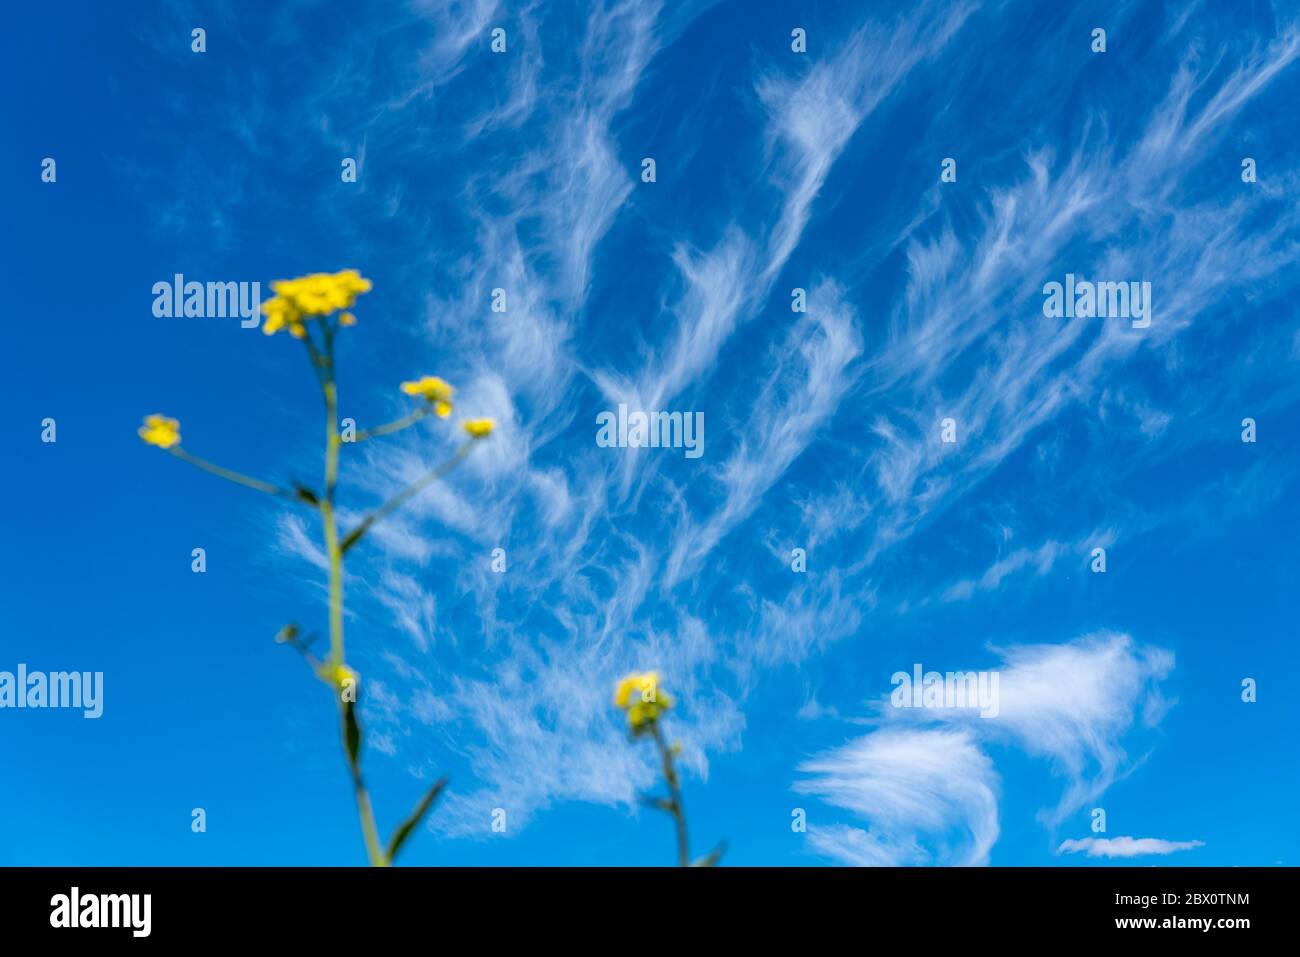 Ciel bleu avec des nuages cirrus, nuages de glace en filigrane à haute altitude, heurs de temps plus chaud, Banque D'Images